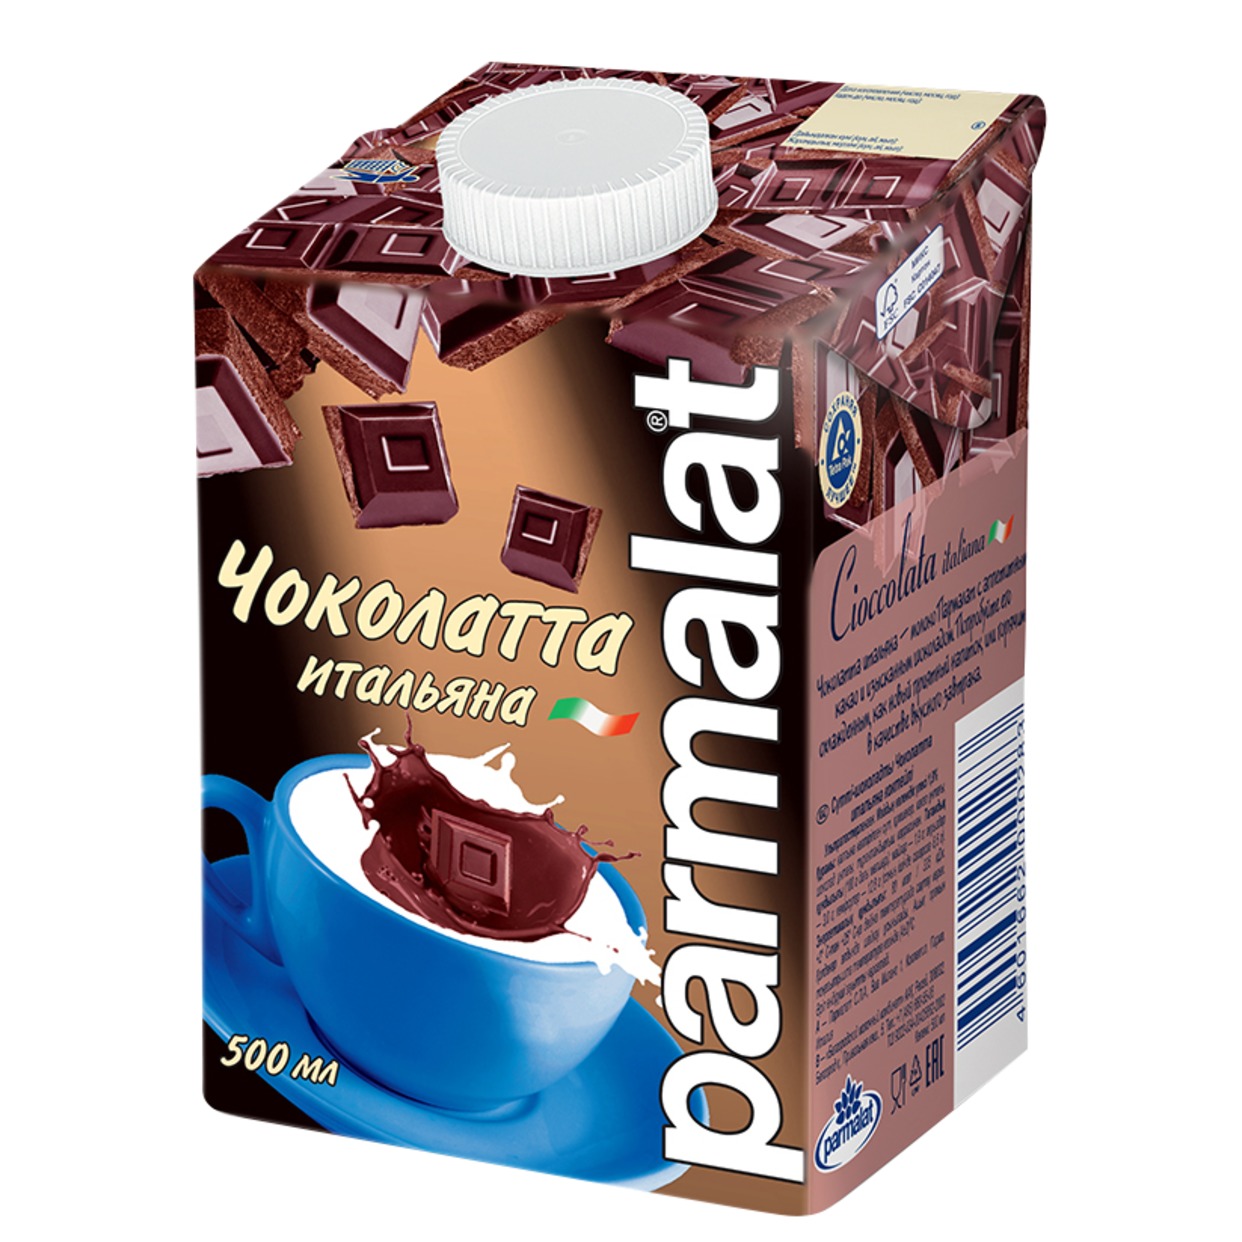 Коктейль молочный Parmalat Чоколатта итальяна 500мл